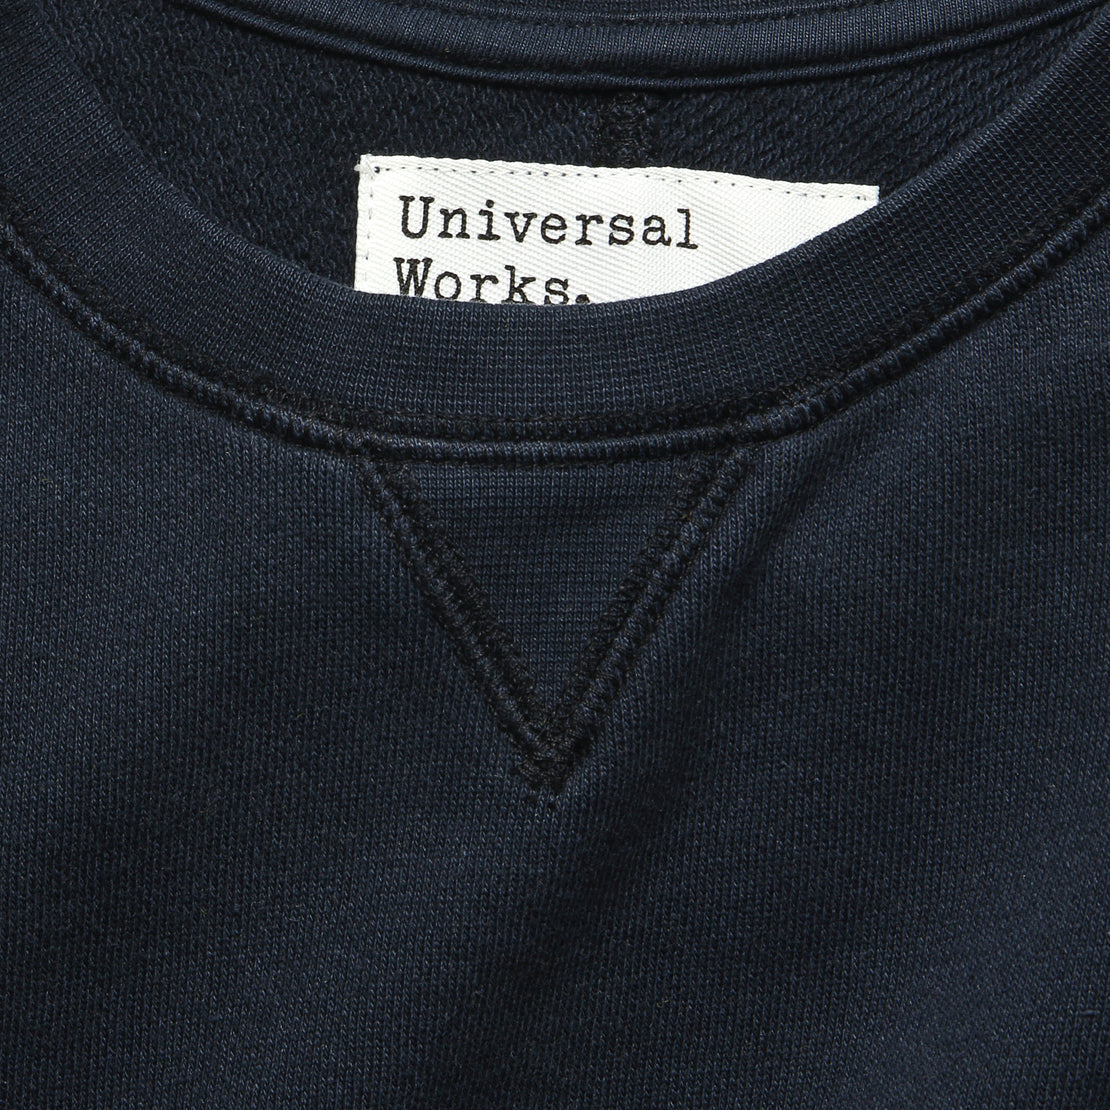 Crew Fleece Sweatshirt - Navy - Universal Works - STAG Provisions - Tops - Fleece / Sweatshirt